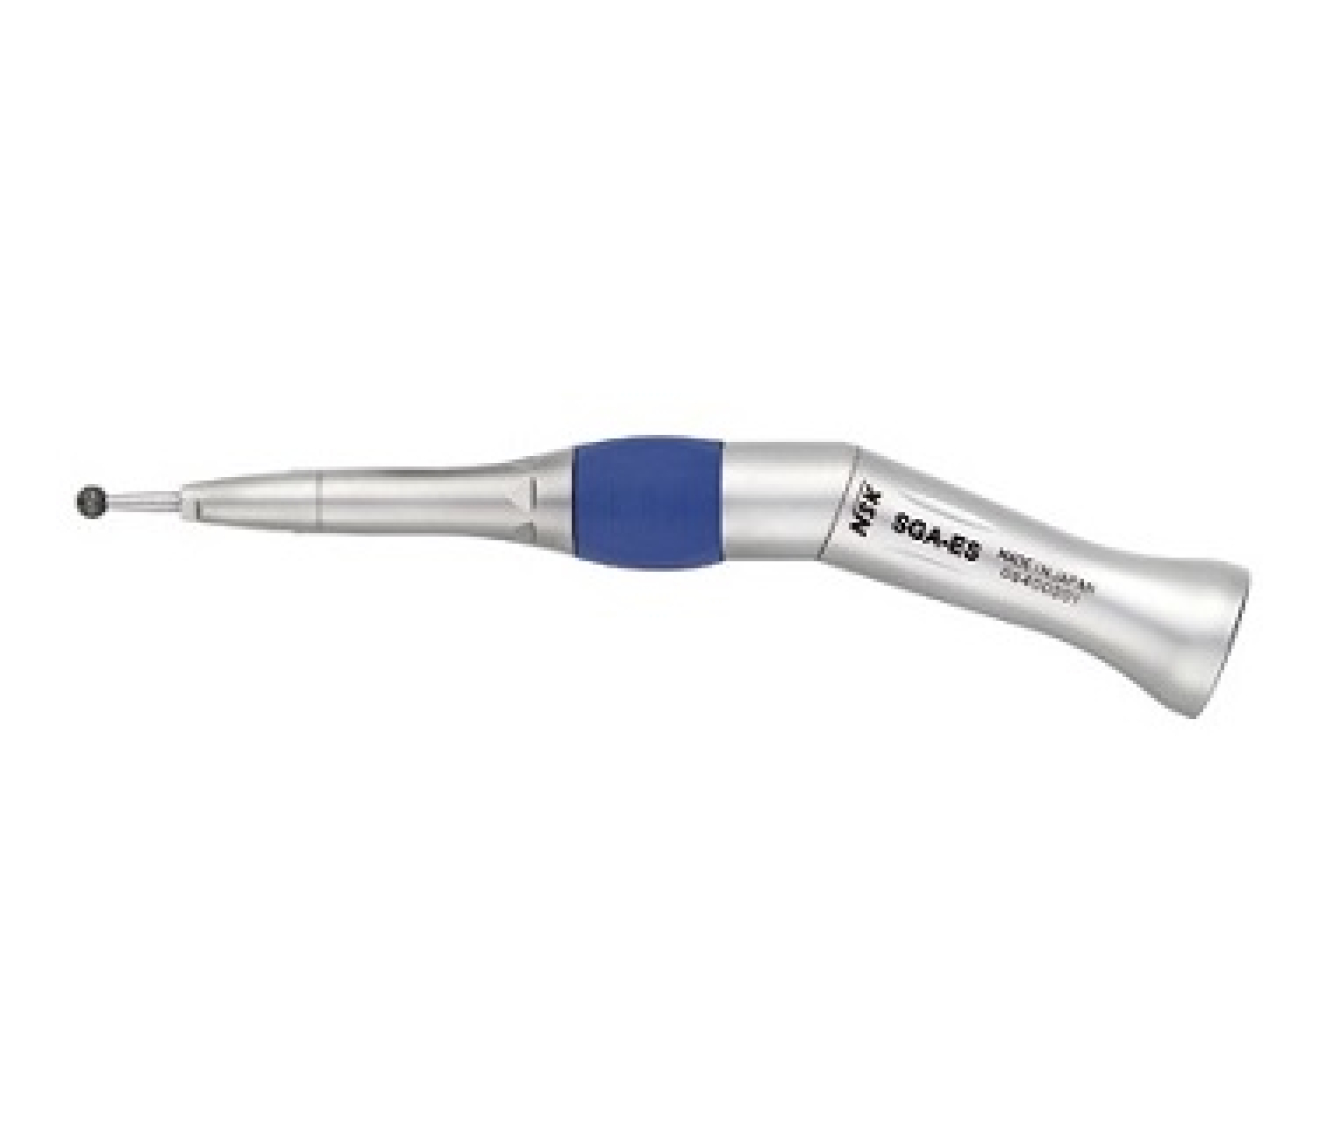 SGA-ES Стоматологический угловой наконечник 20 градусов, прямая передача 1:1, для хирургических боров диаметром 2.35 мм, NSK (Япония)